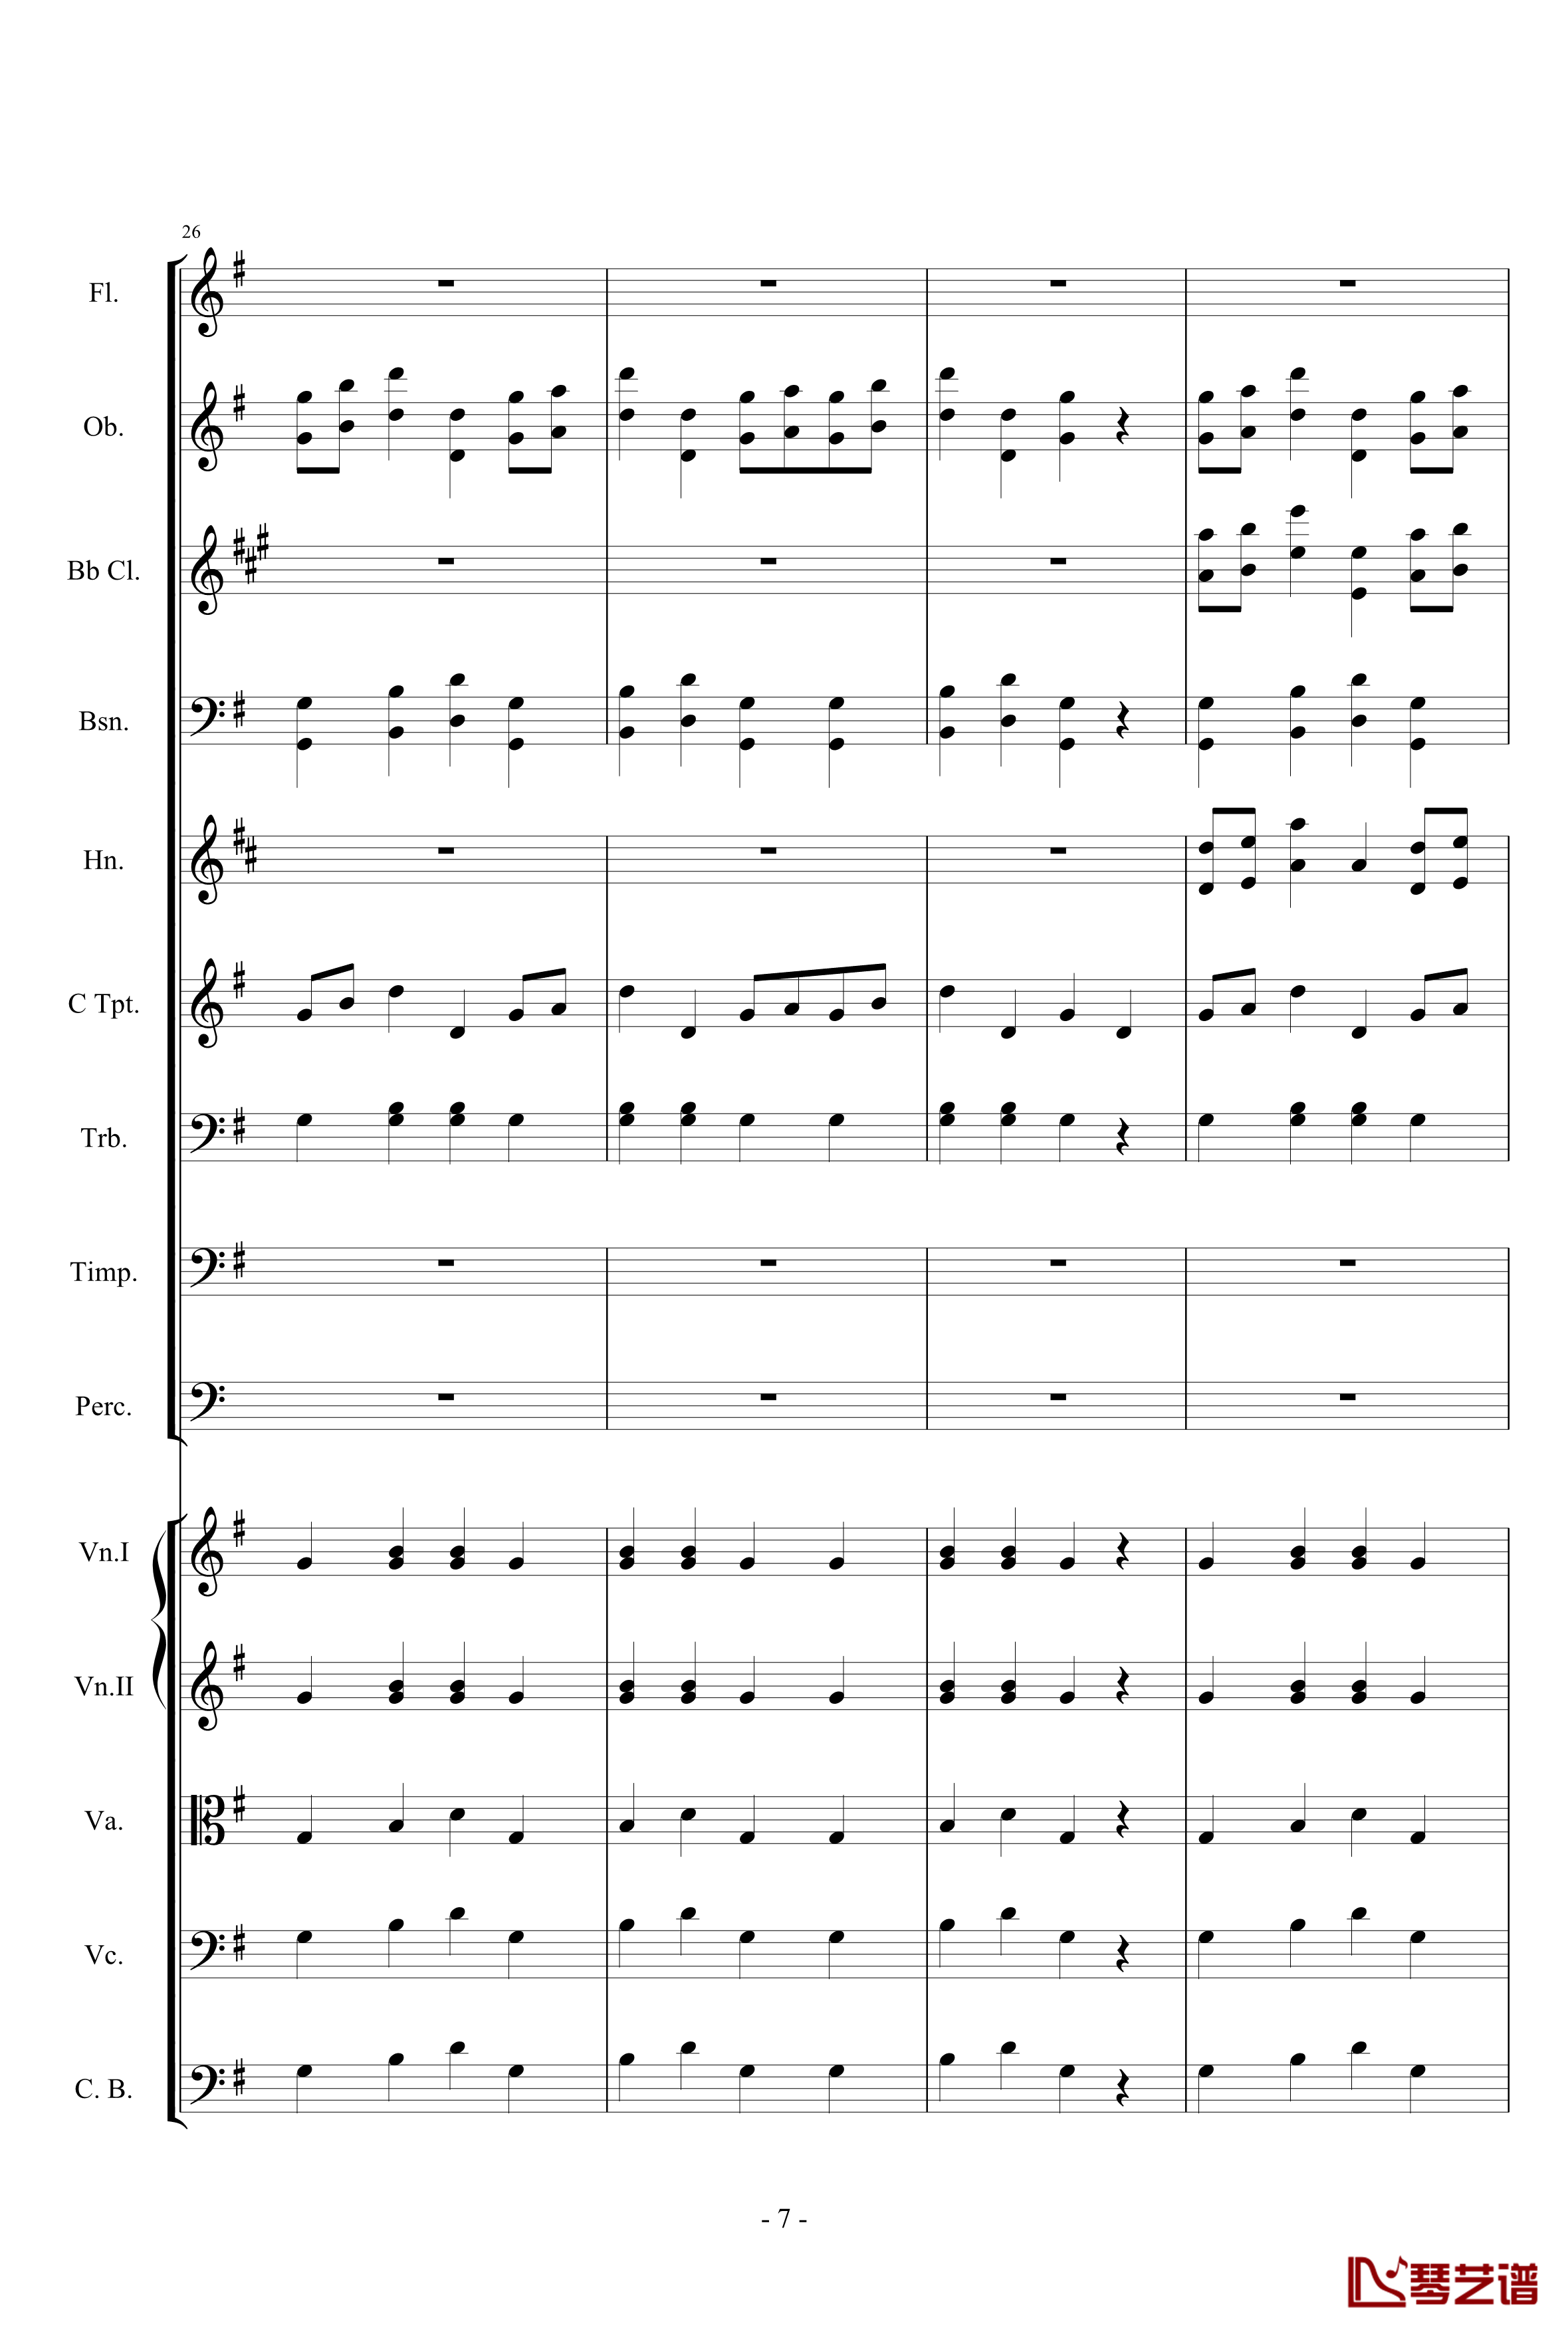 愤怒的小鸟交响曲第一乐章Op.5 no.1钢琴谱-105725787